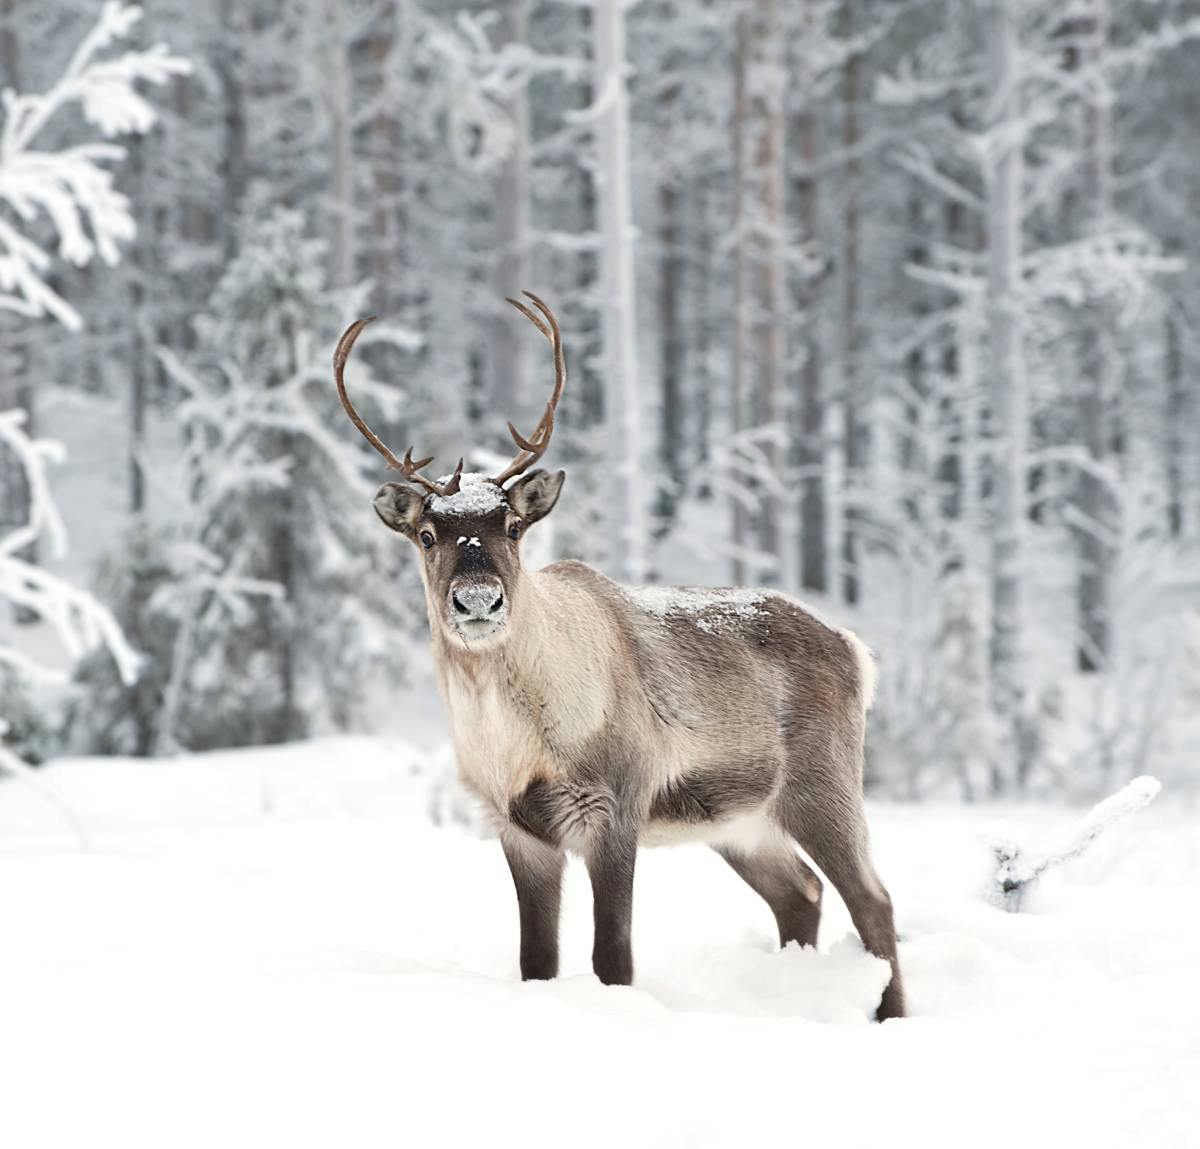 Species of the Week: reindeer